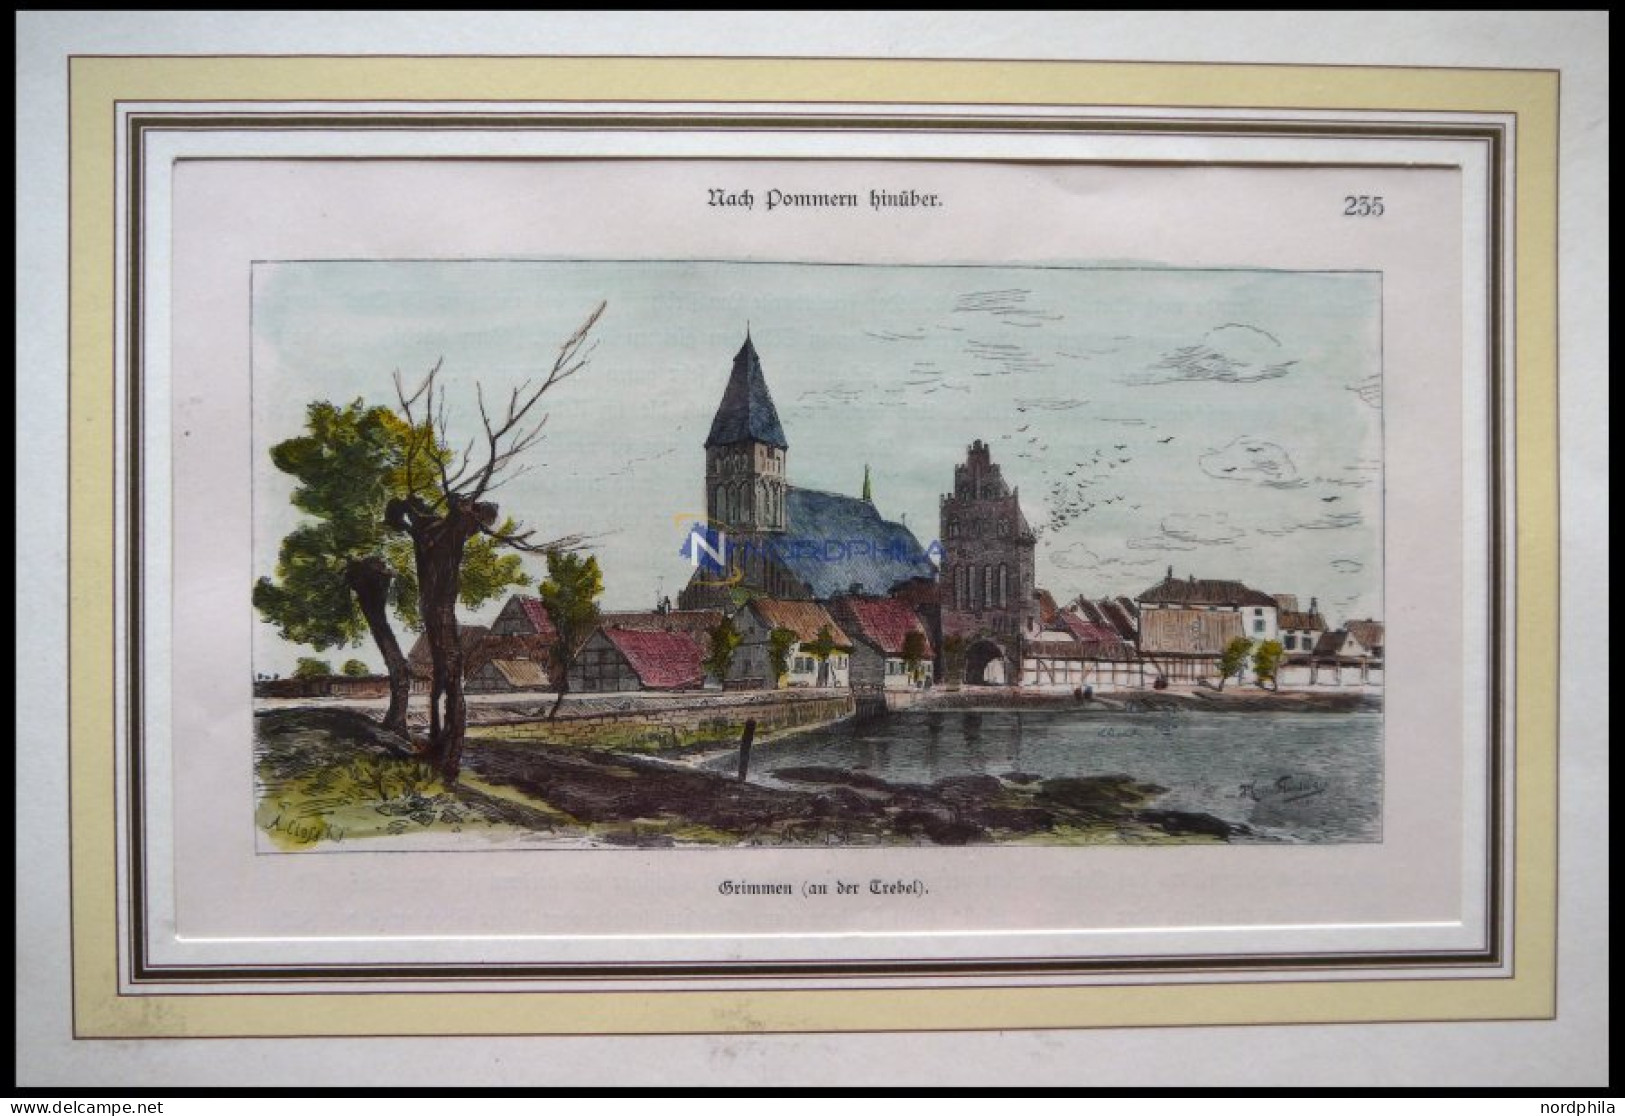 GRIMMEN An Der Trebel, Kolorierter Holzstich Von Gustav Schönleber Von 1881 - Prints & Engravings